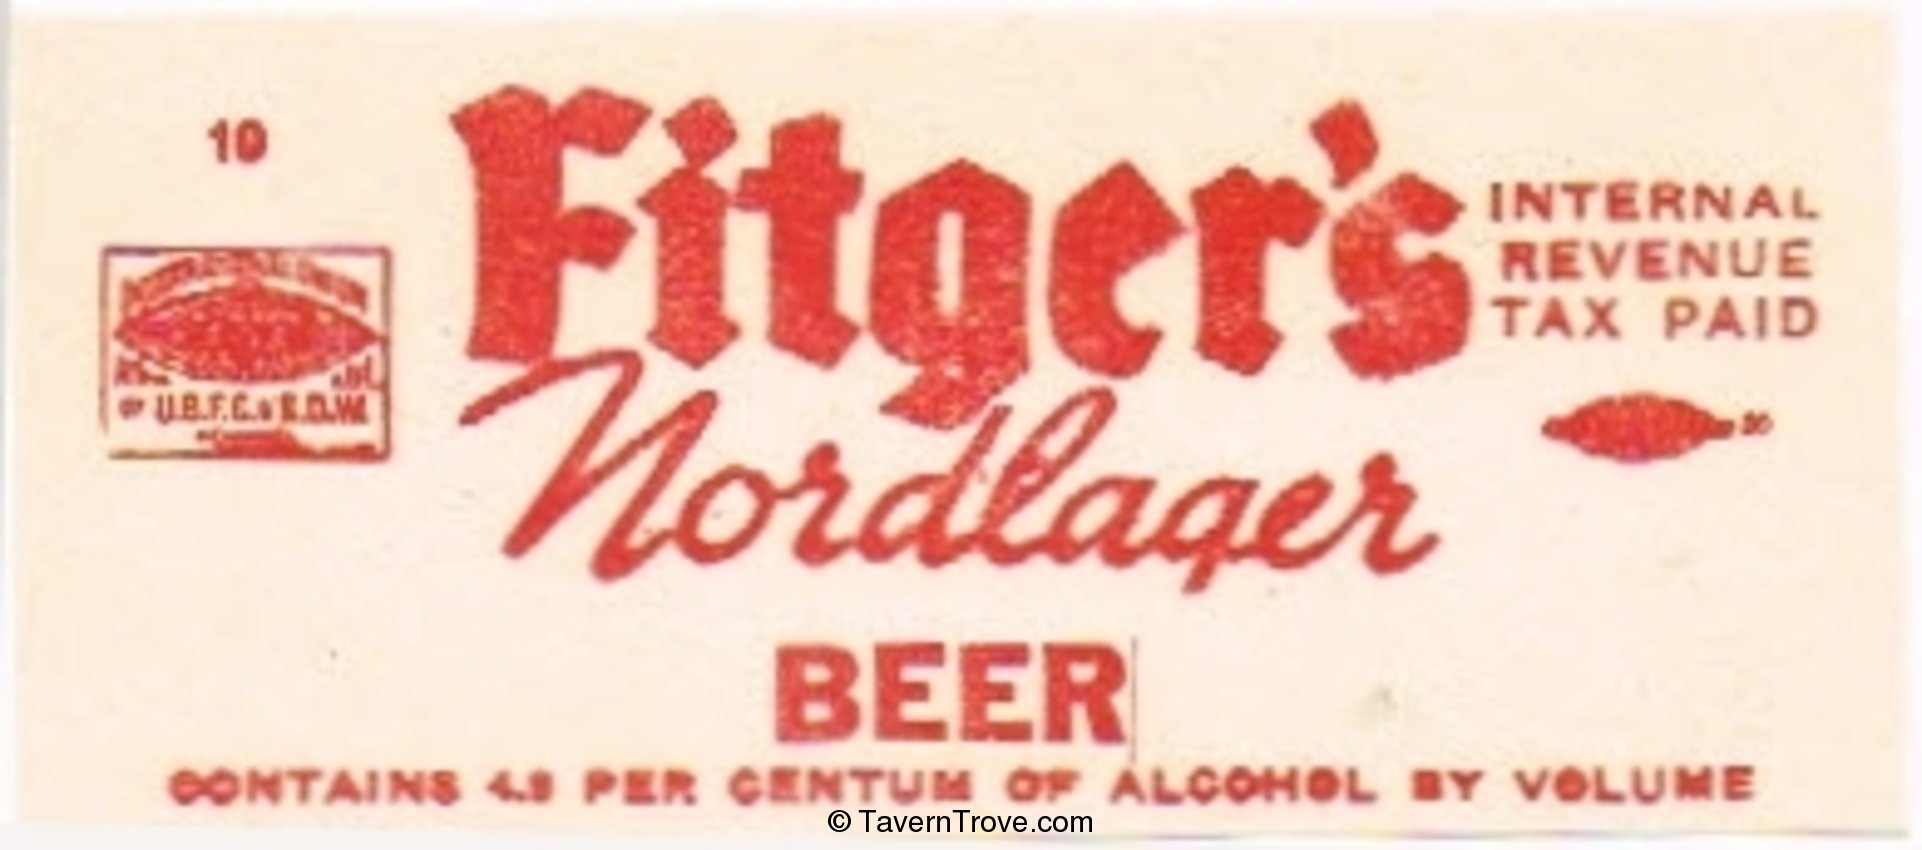 Fitger's Nordlager Beer 